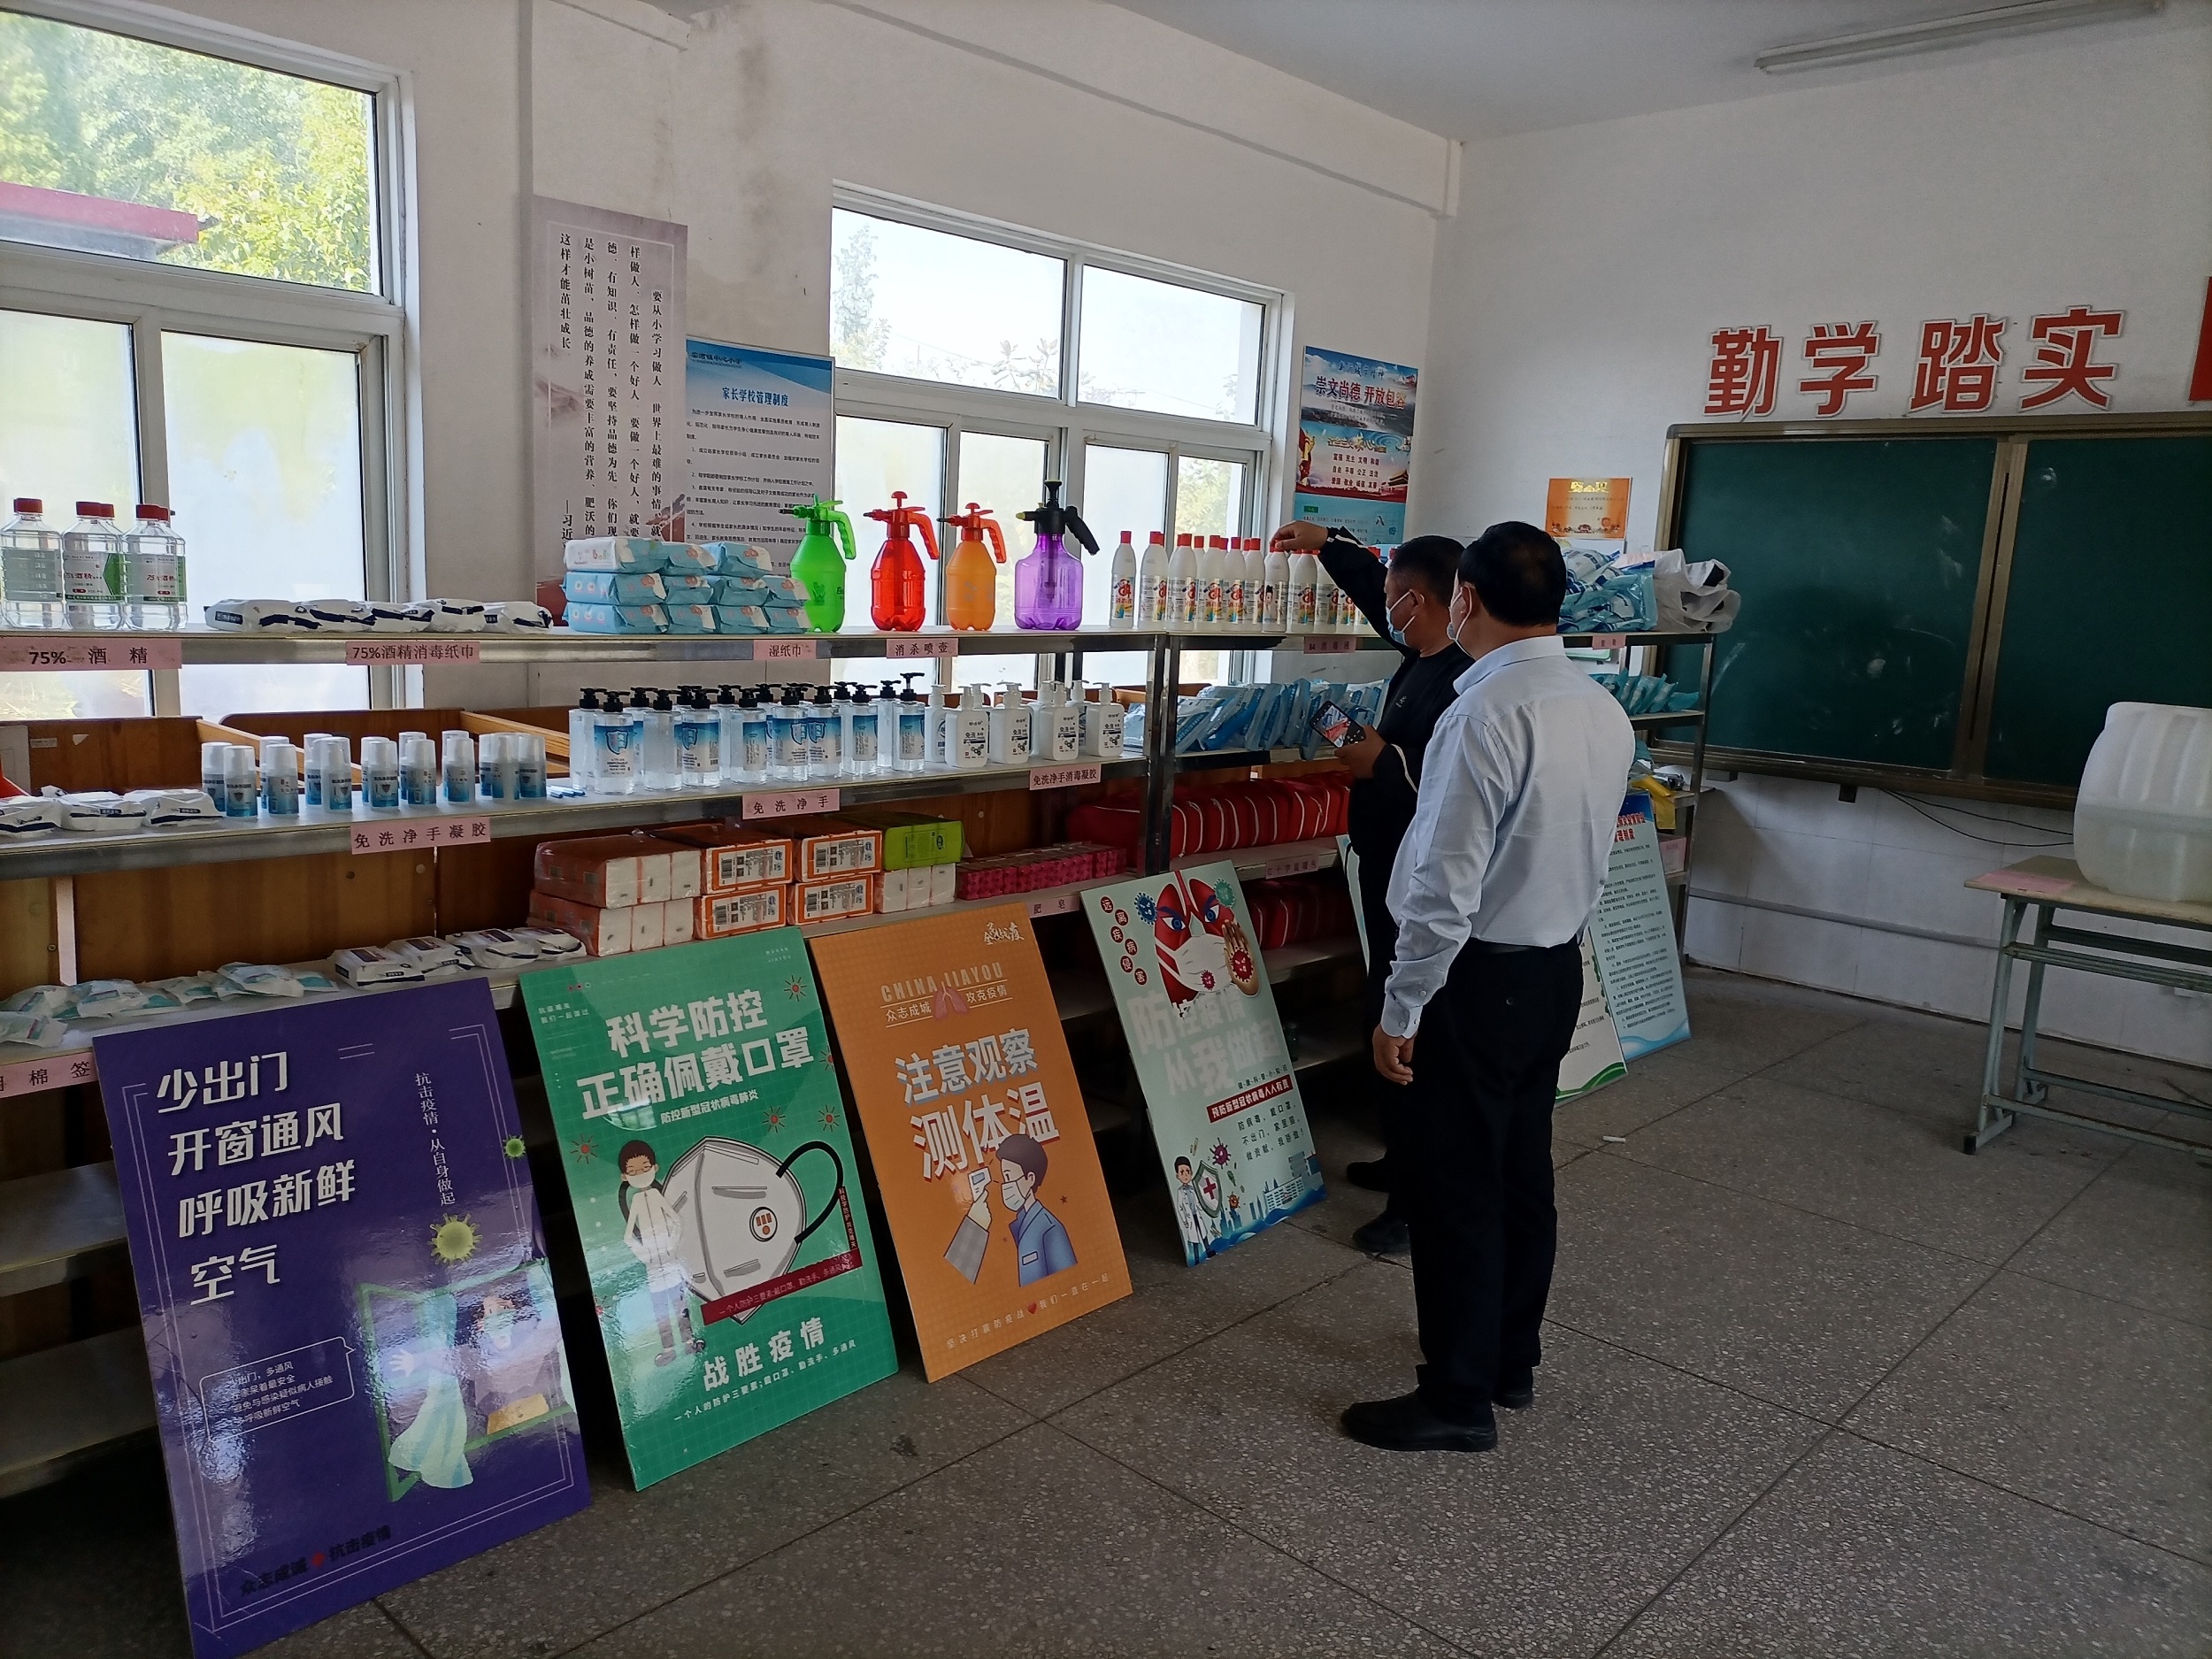 疫情无小事，责任重在肩 ----窑湾镇中心小学迎疫情防控检查活动